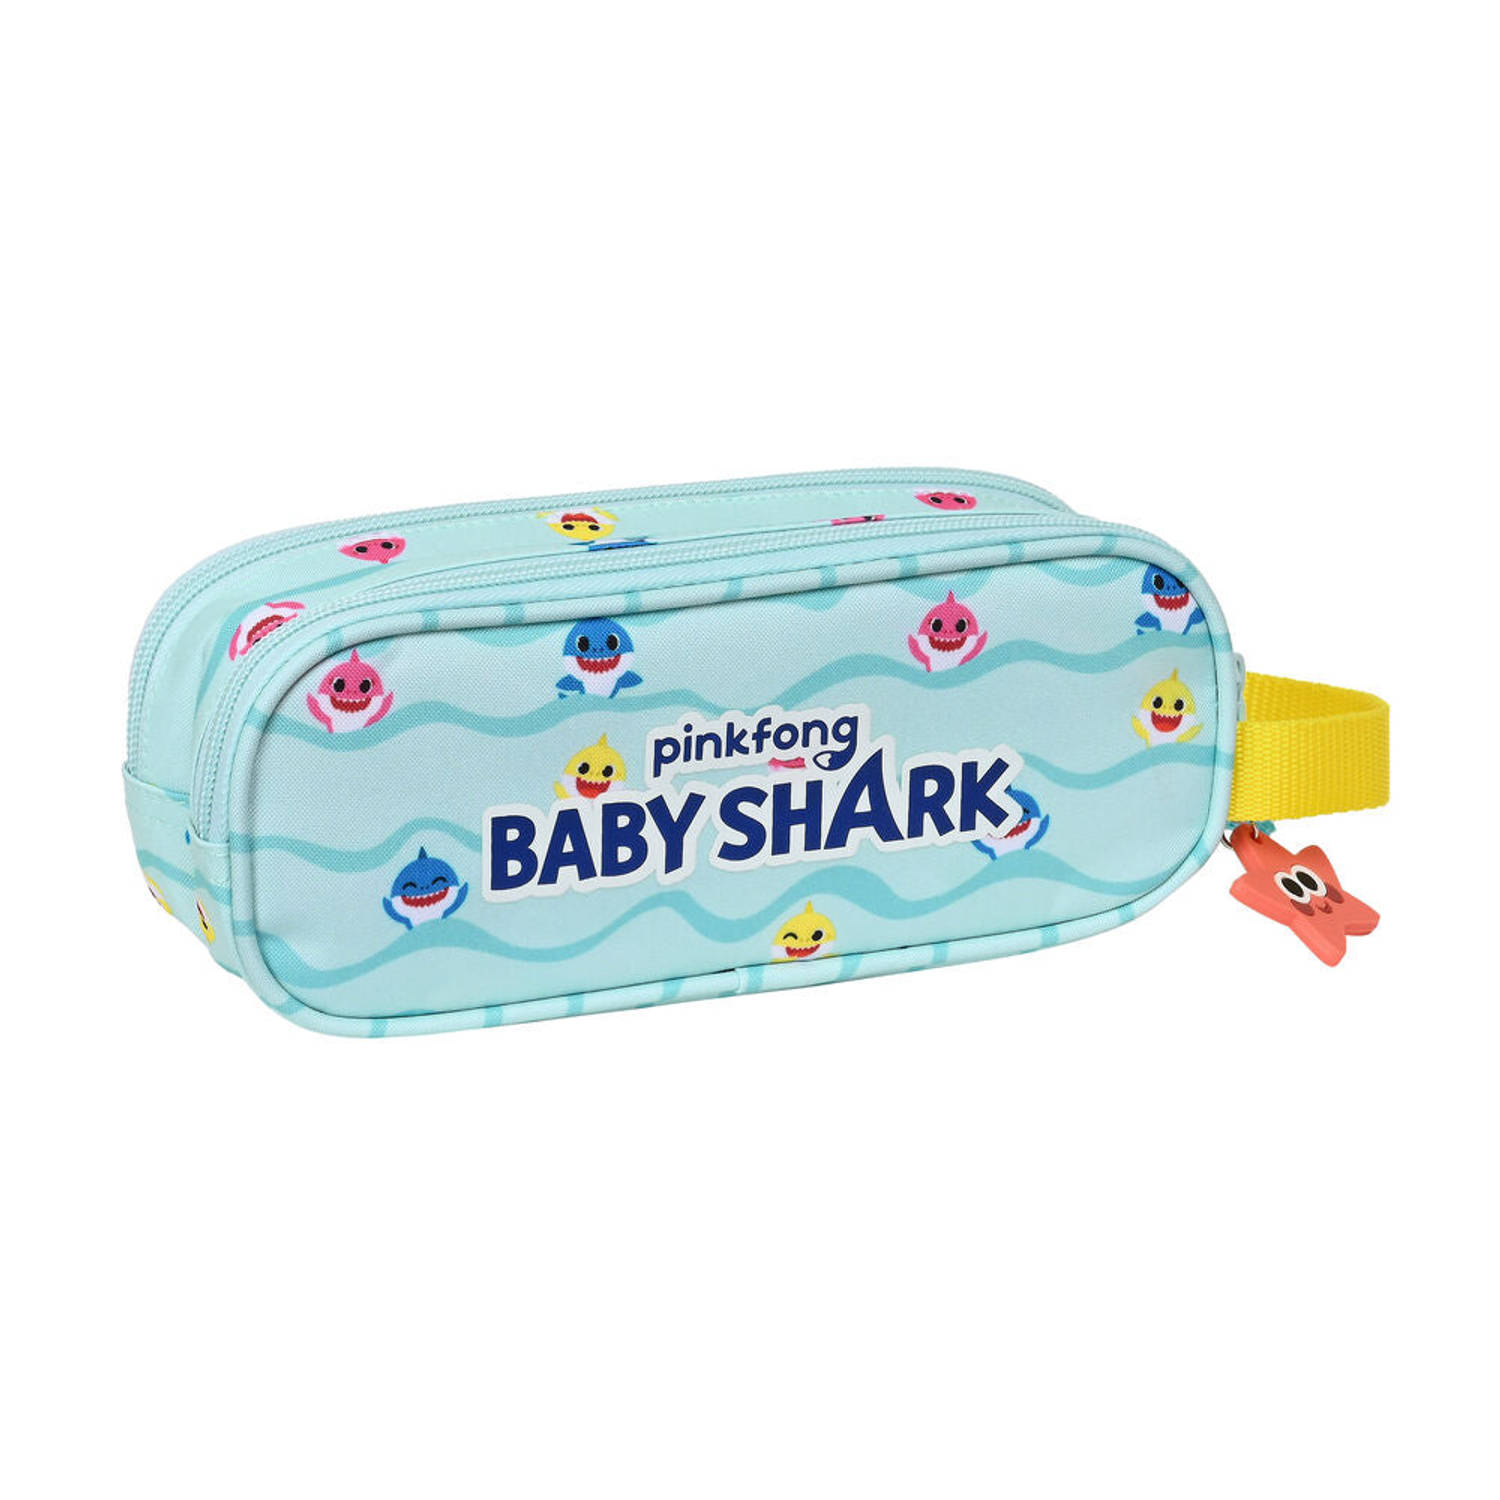 Schoolpennenzak Baby Shark Beach Day Geel Licht Blauw (21 x 8 x 6 cm)